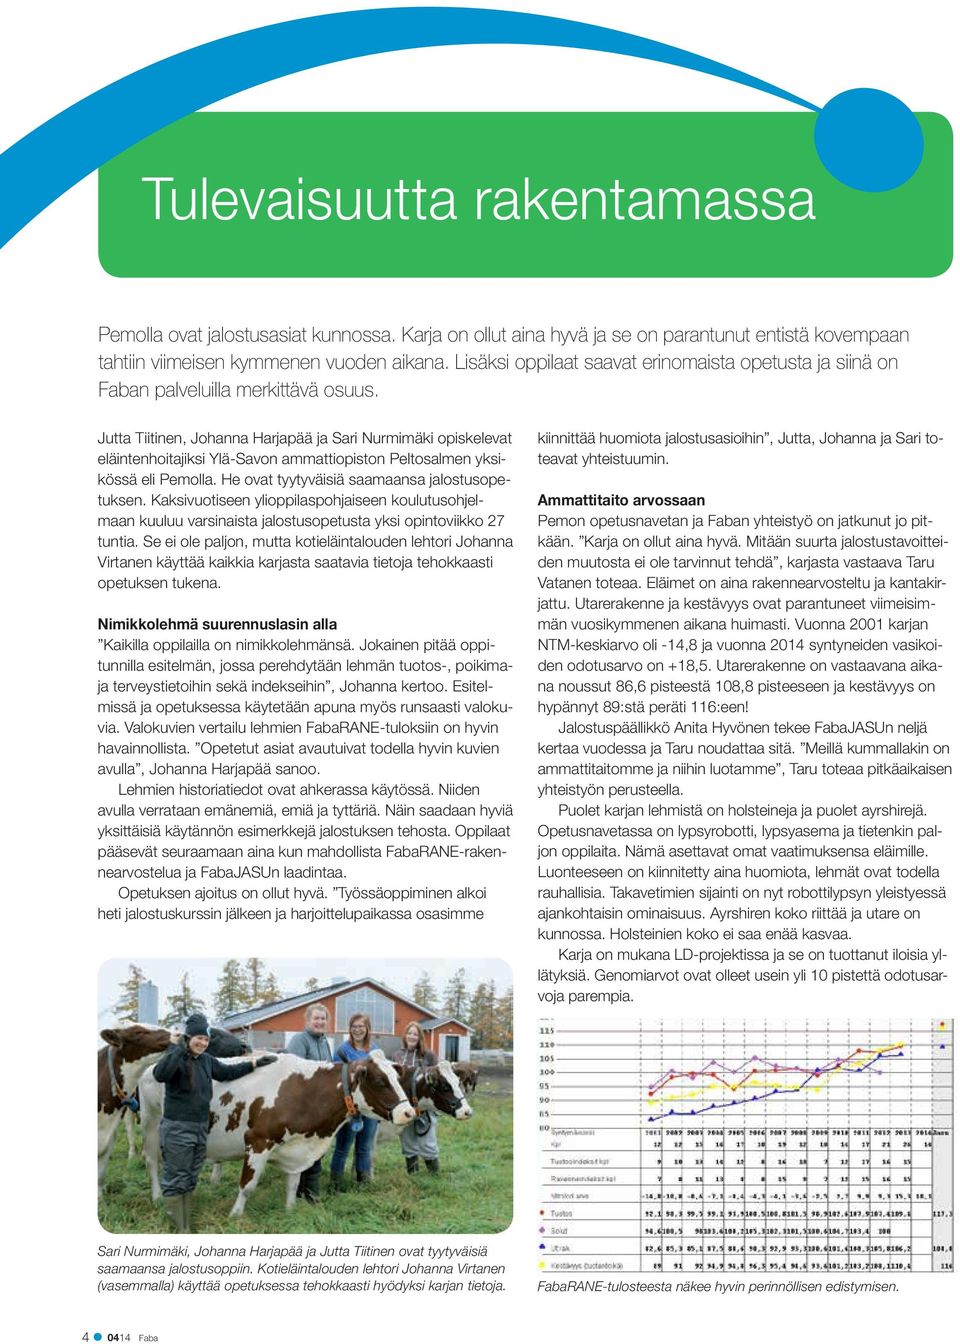 Jutta Tiitinen, Johanna Harjapää ja Sari Nurmimäki opiskelevat eläintenhoitajiksi Ylä-Savon ammattiopiston Peltosalmen yksikössä eli Pemolla. He ovat tyytyväisiä saamaansa jalostusopetuksen.